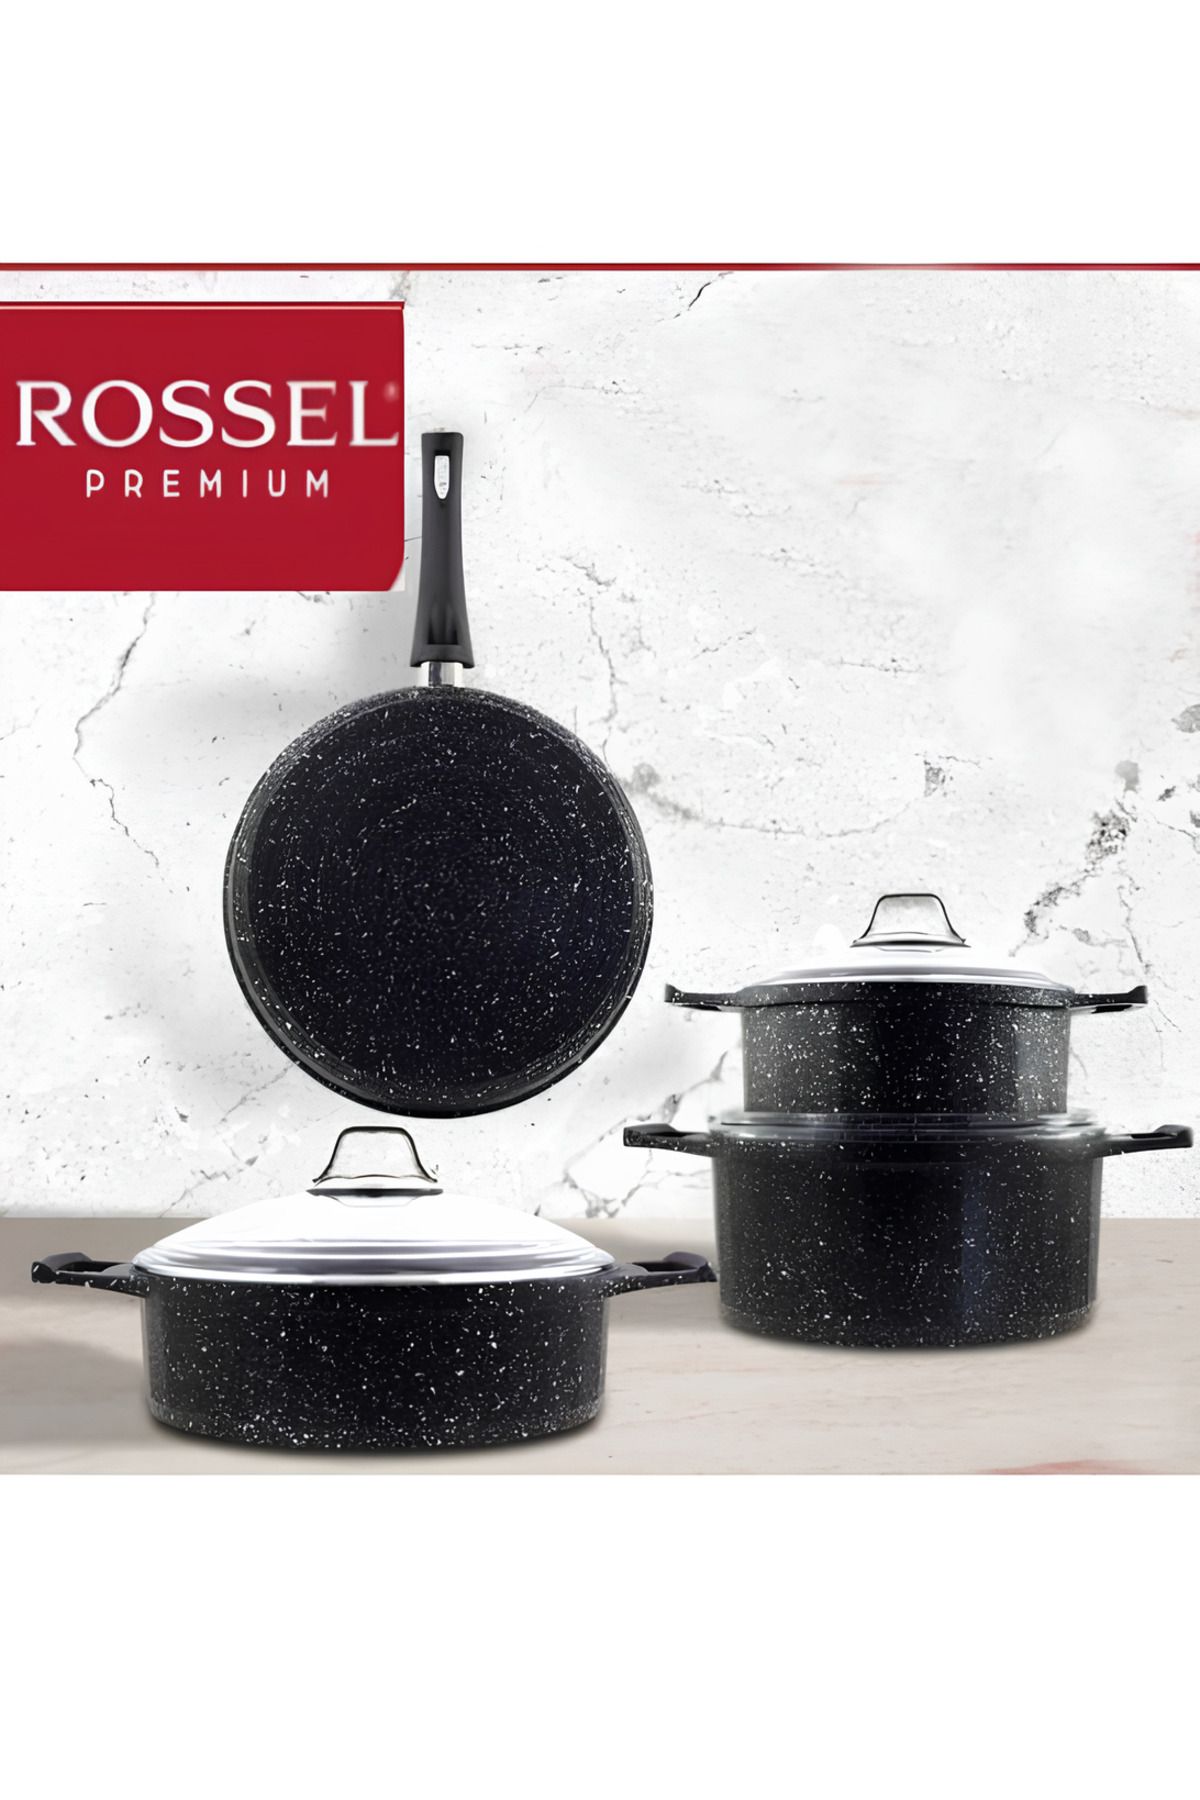 Rossel Premium 7 Parça Granit Tencere Seti